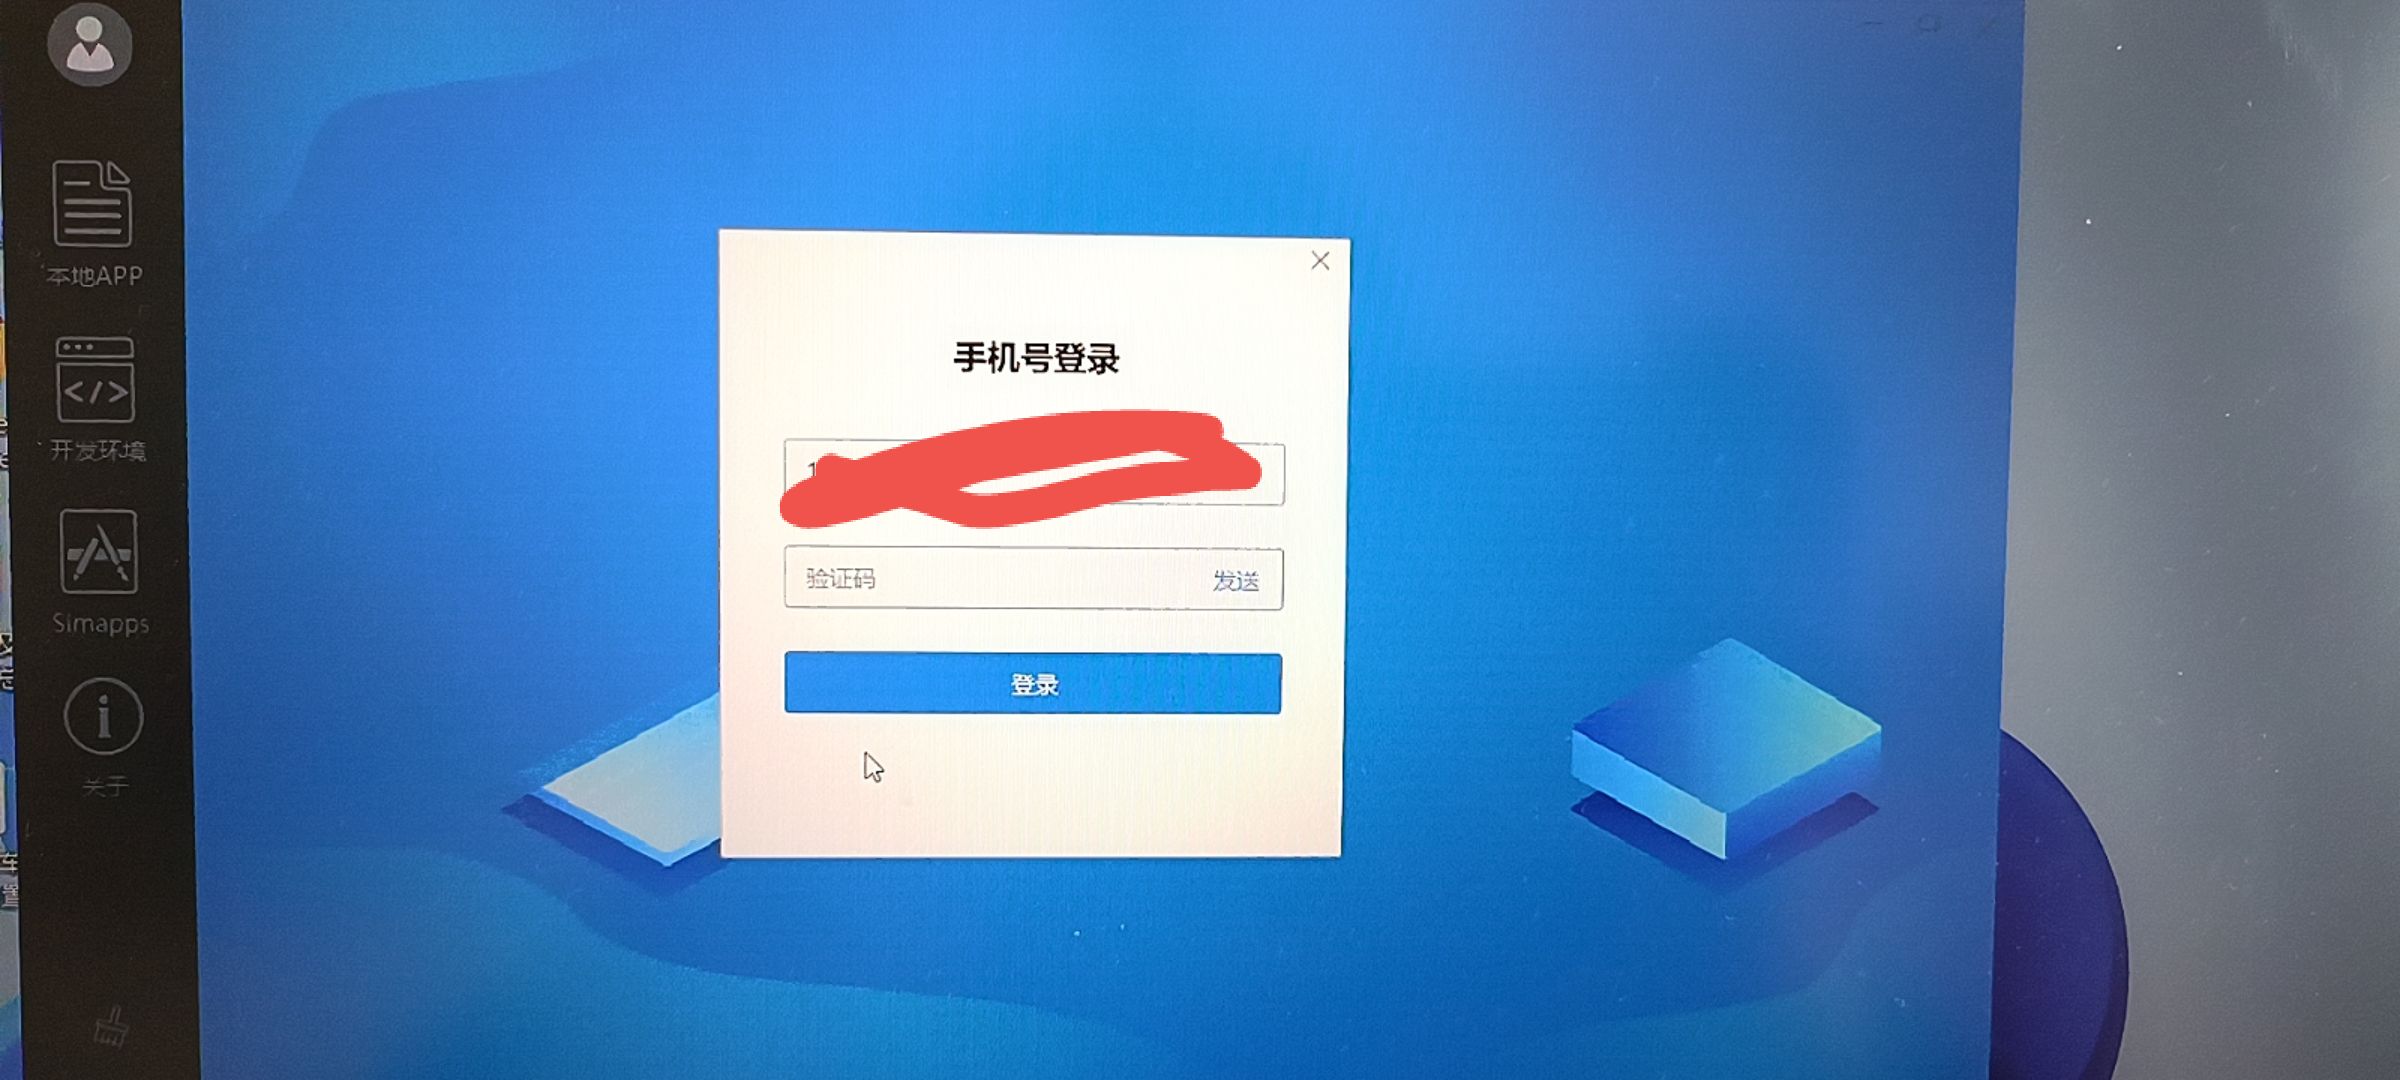 中国互联网举报中心验证码不正确怎么办，12315平台提示图片验证码错误